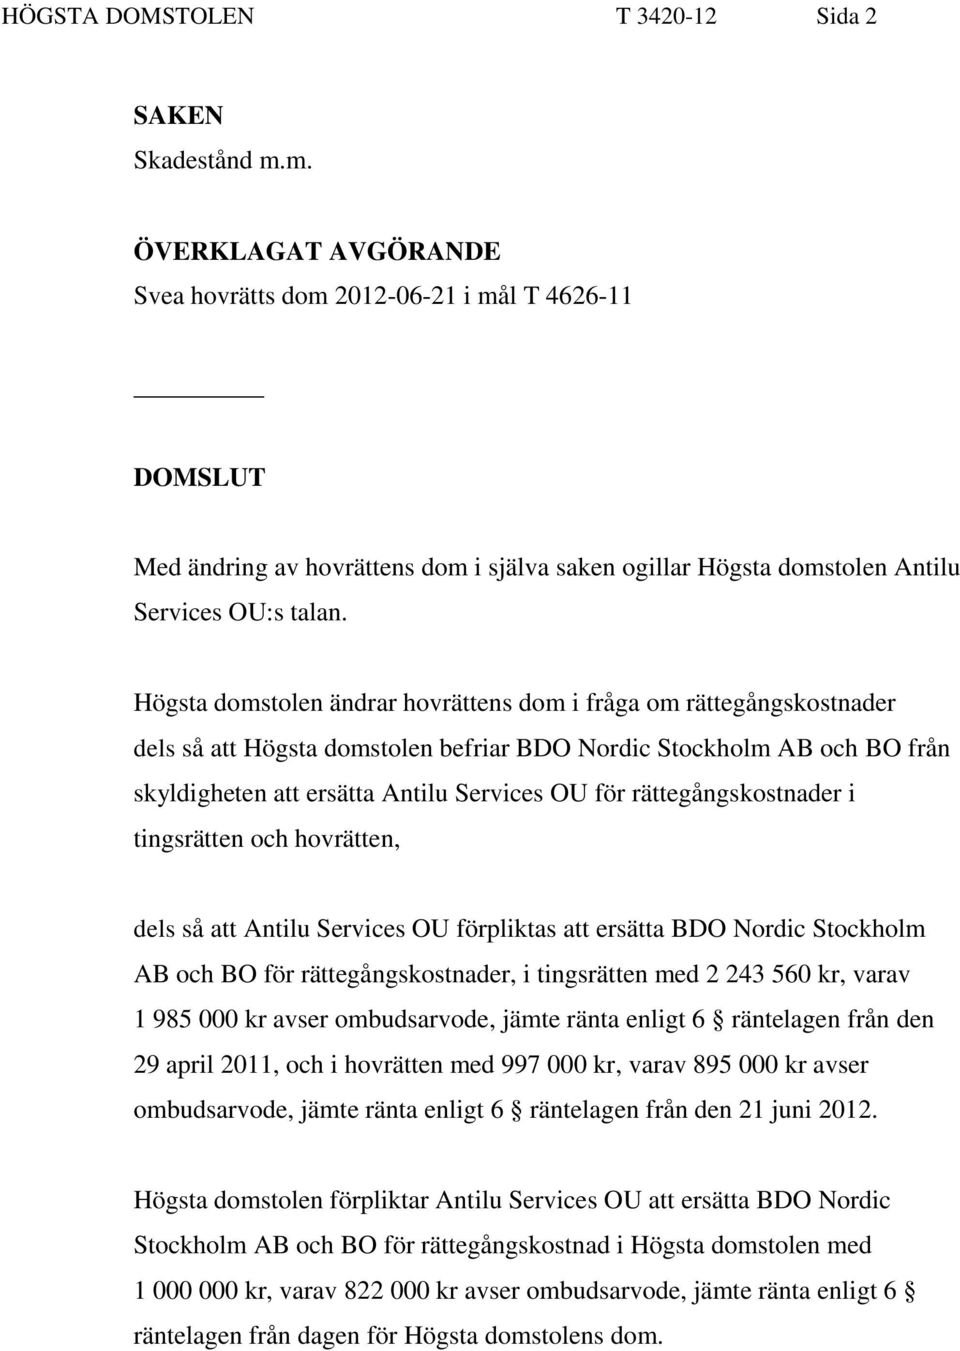 Högsta domstolen ändrar hovrättens dom i fråga om rättegångskostnader dels så att Högsta domstolen befriar BDO Nordic Stockholm AB och BO från skyldigheten att ersätta Antilu Services OU för